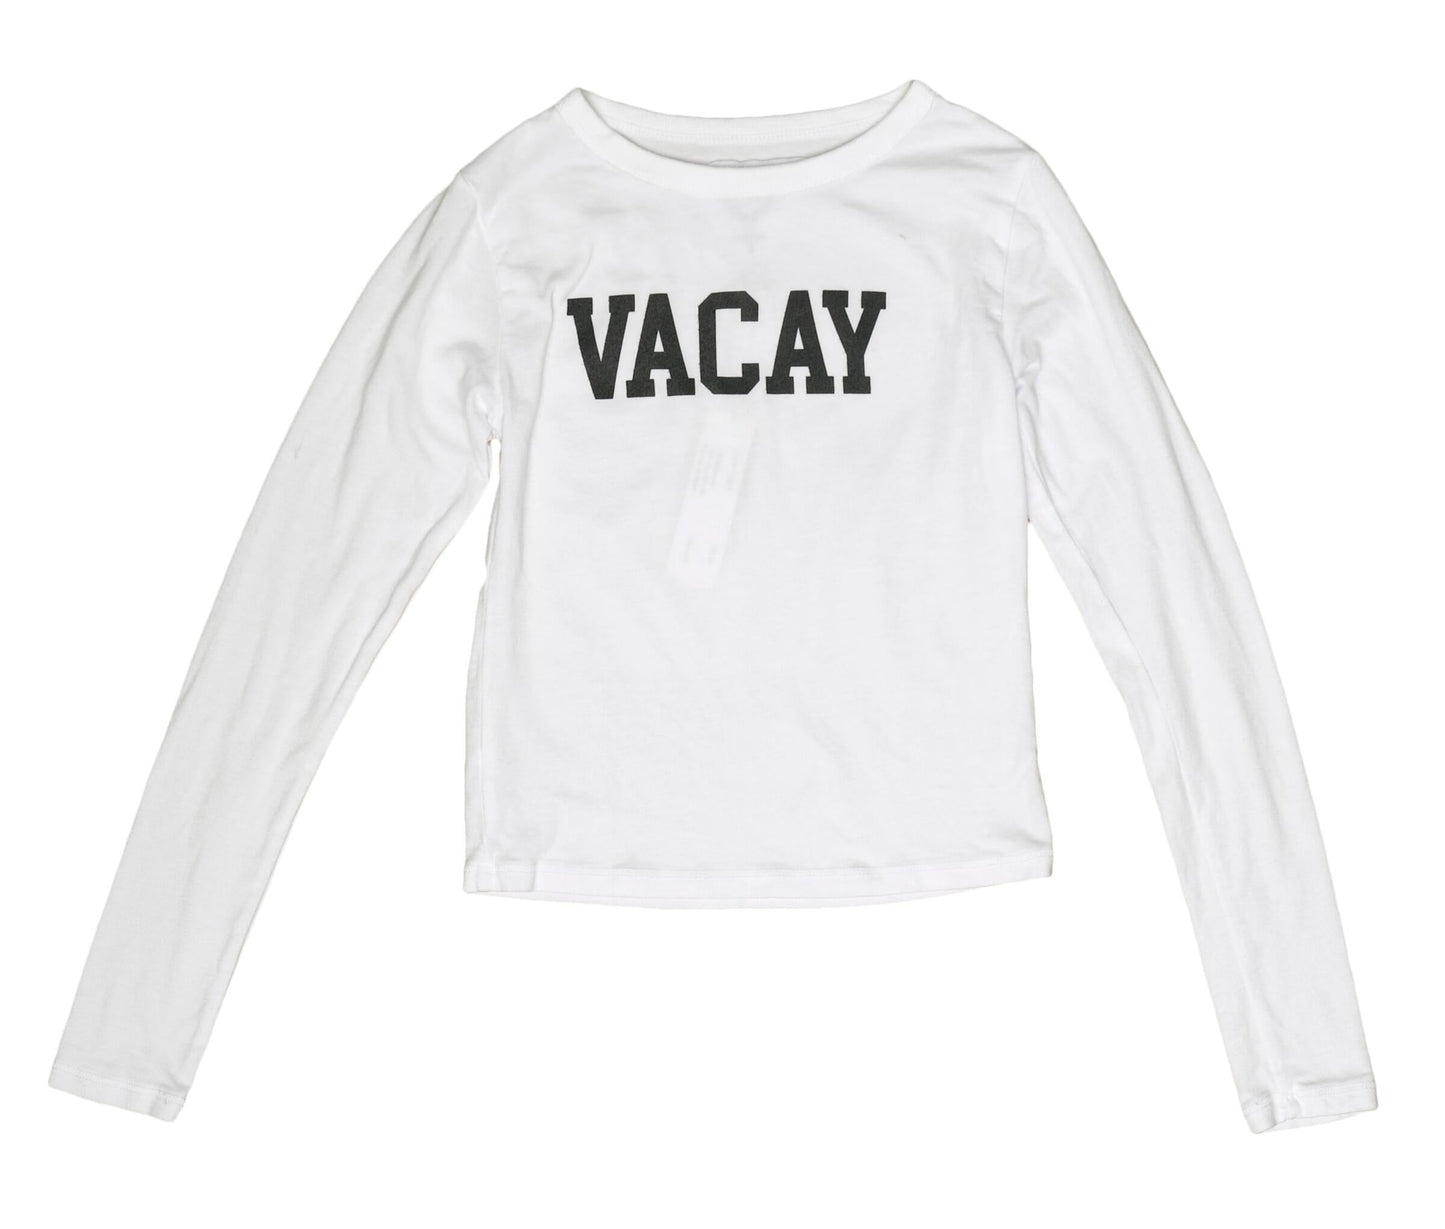 "VACAY" Cropped Long-Sleeved Shirt